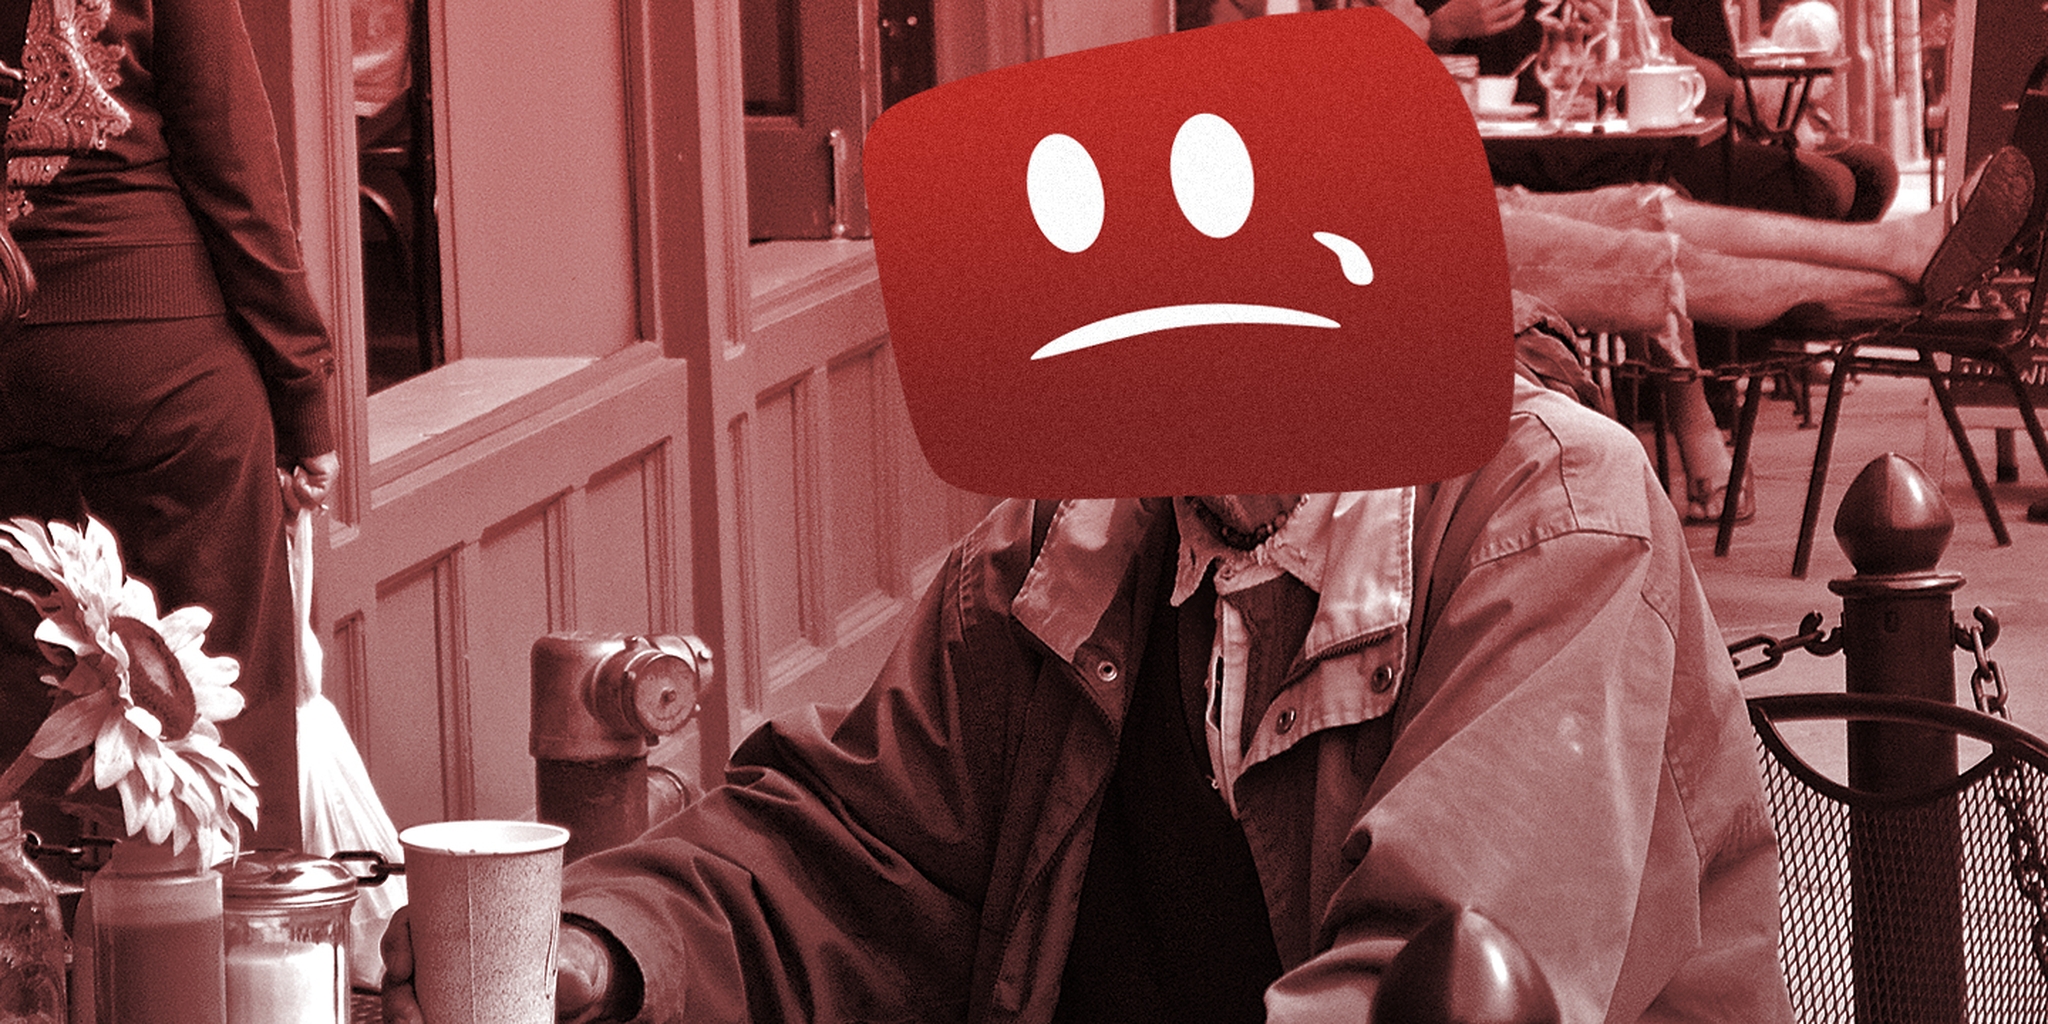 مجزرة يوتيوب: حذف الملايين من القنوات ومقاطع الفيديو والتعليقات والمشتركين